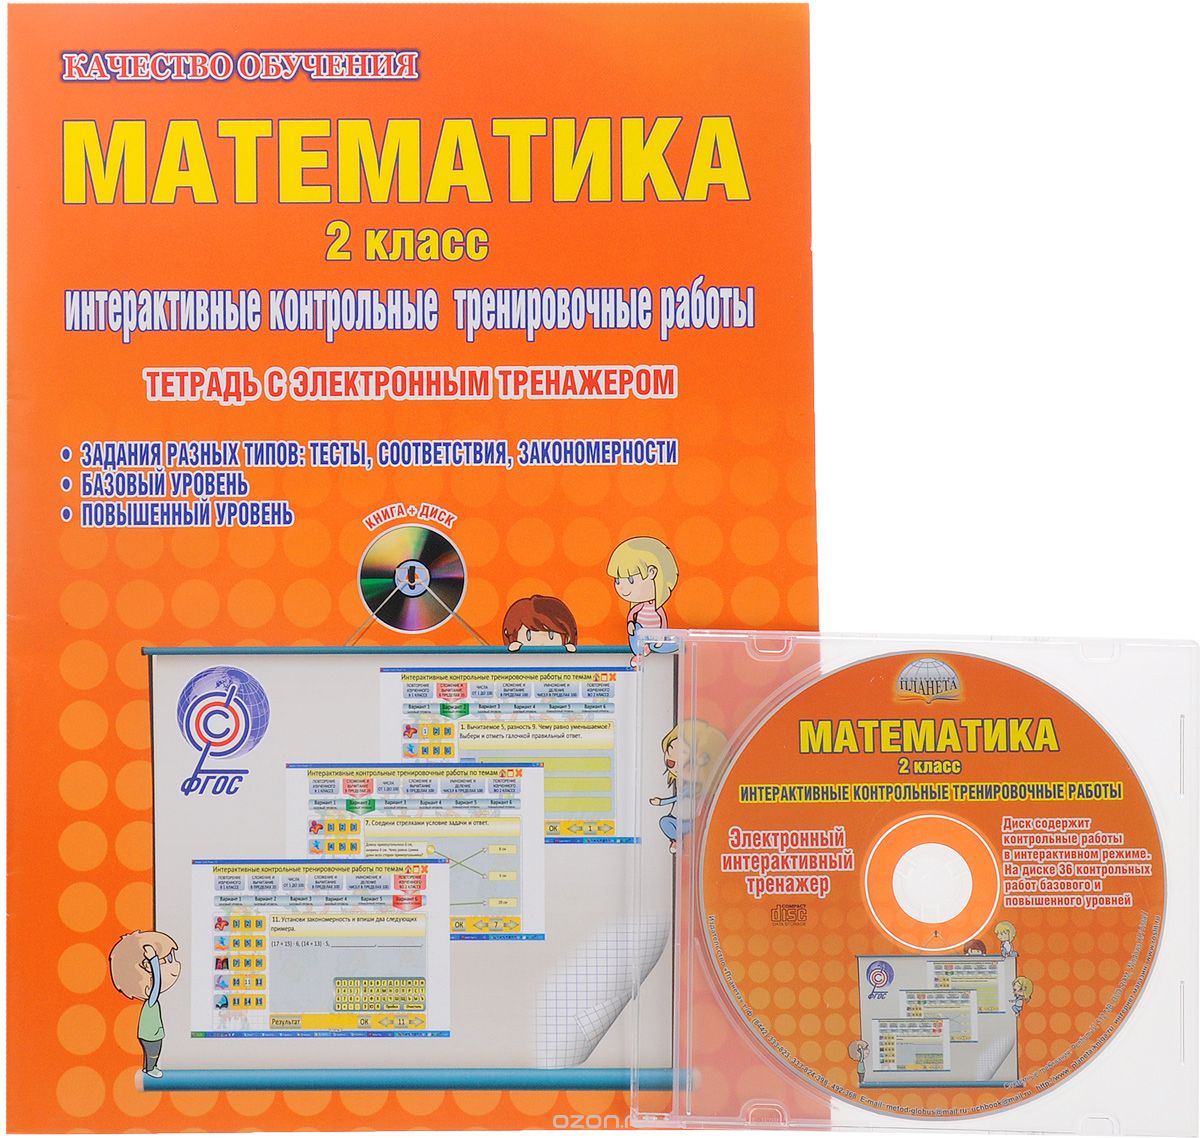 Скачать книгу "Математика. 2 класс. Интерактивные контрольные тренировочные работы. Тетрадь с электронным тренажером (+ CD), М. С. Умнова"